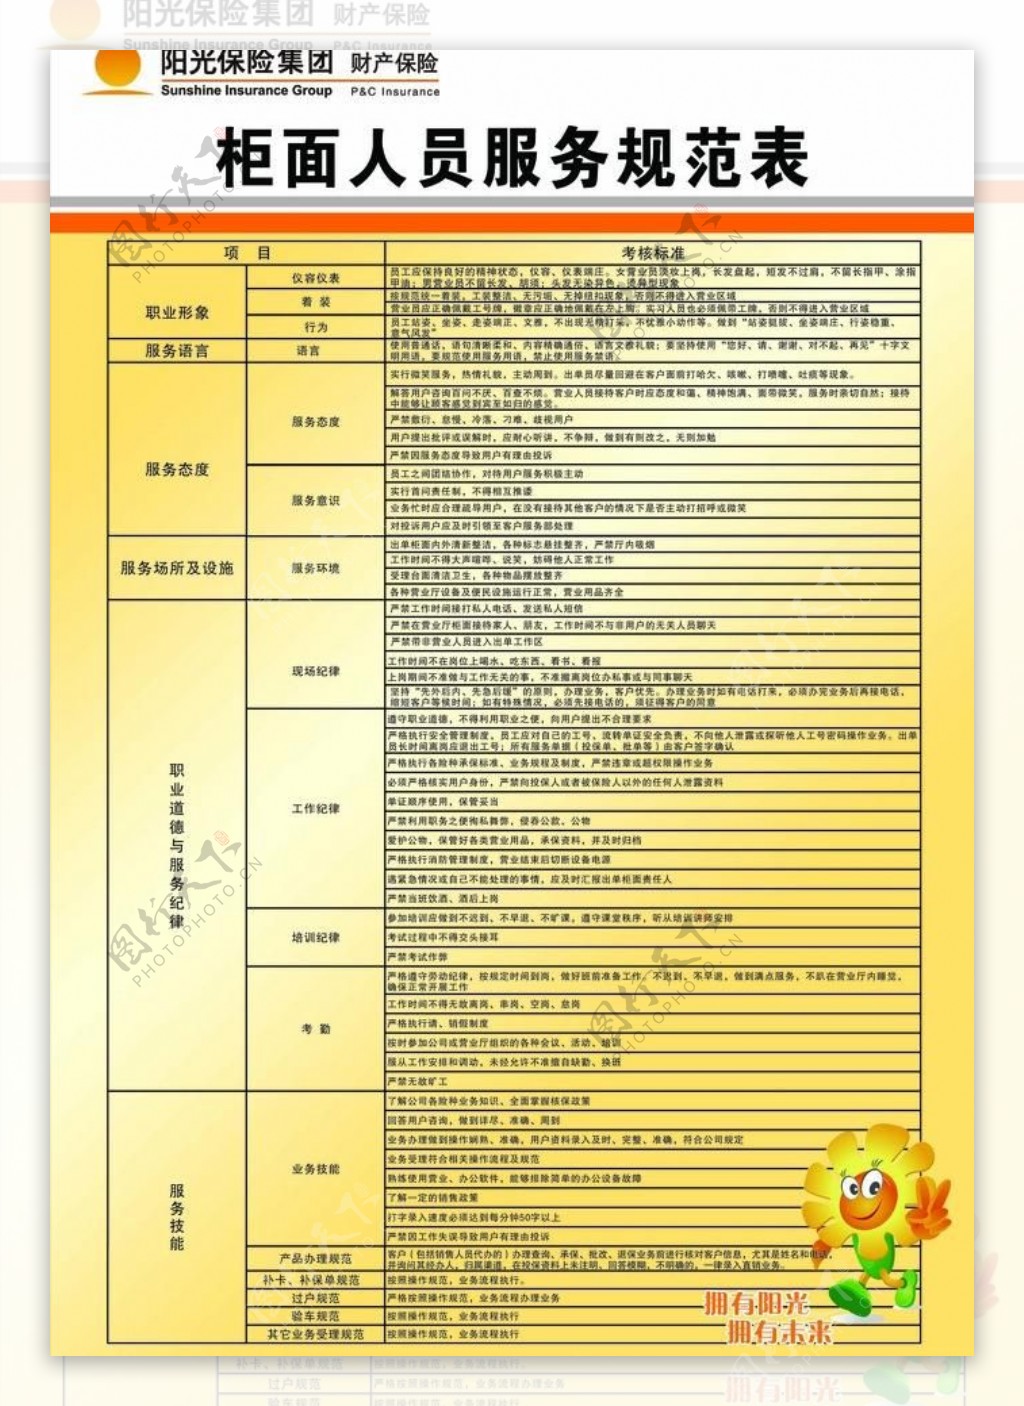 阳光保险标志柜员人员服务规范表图片